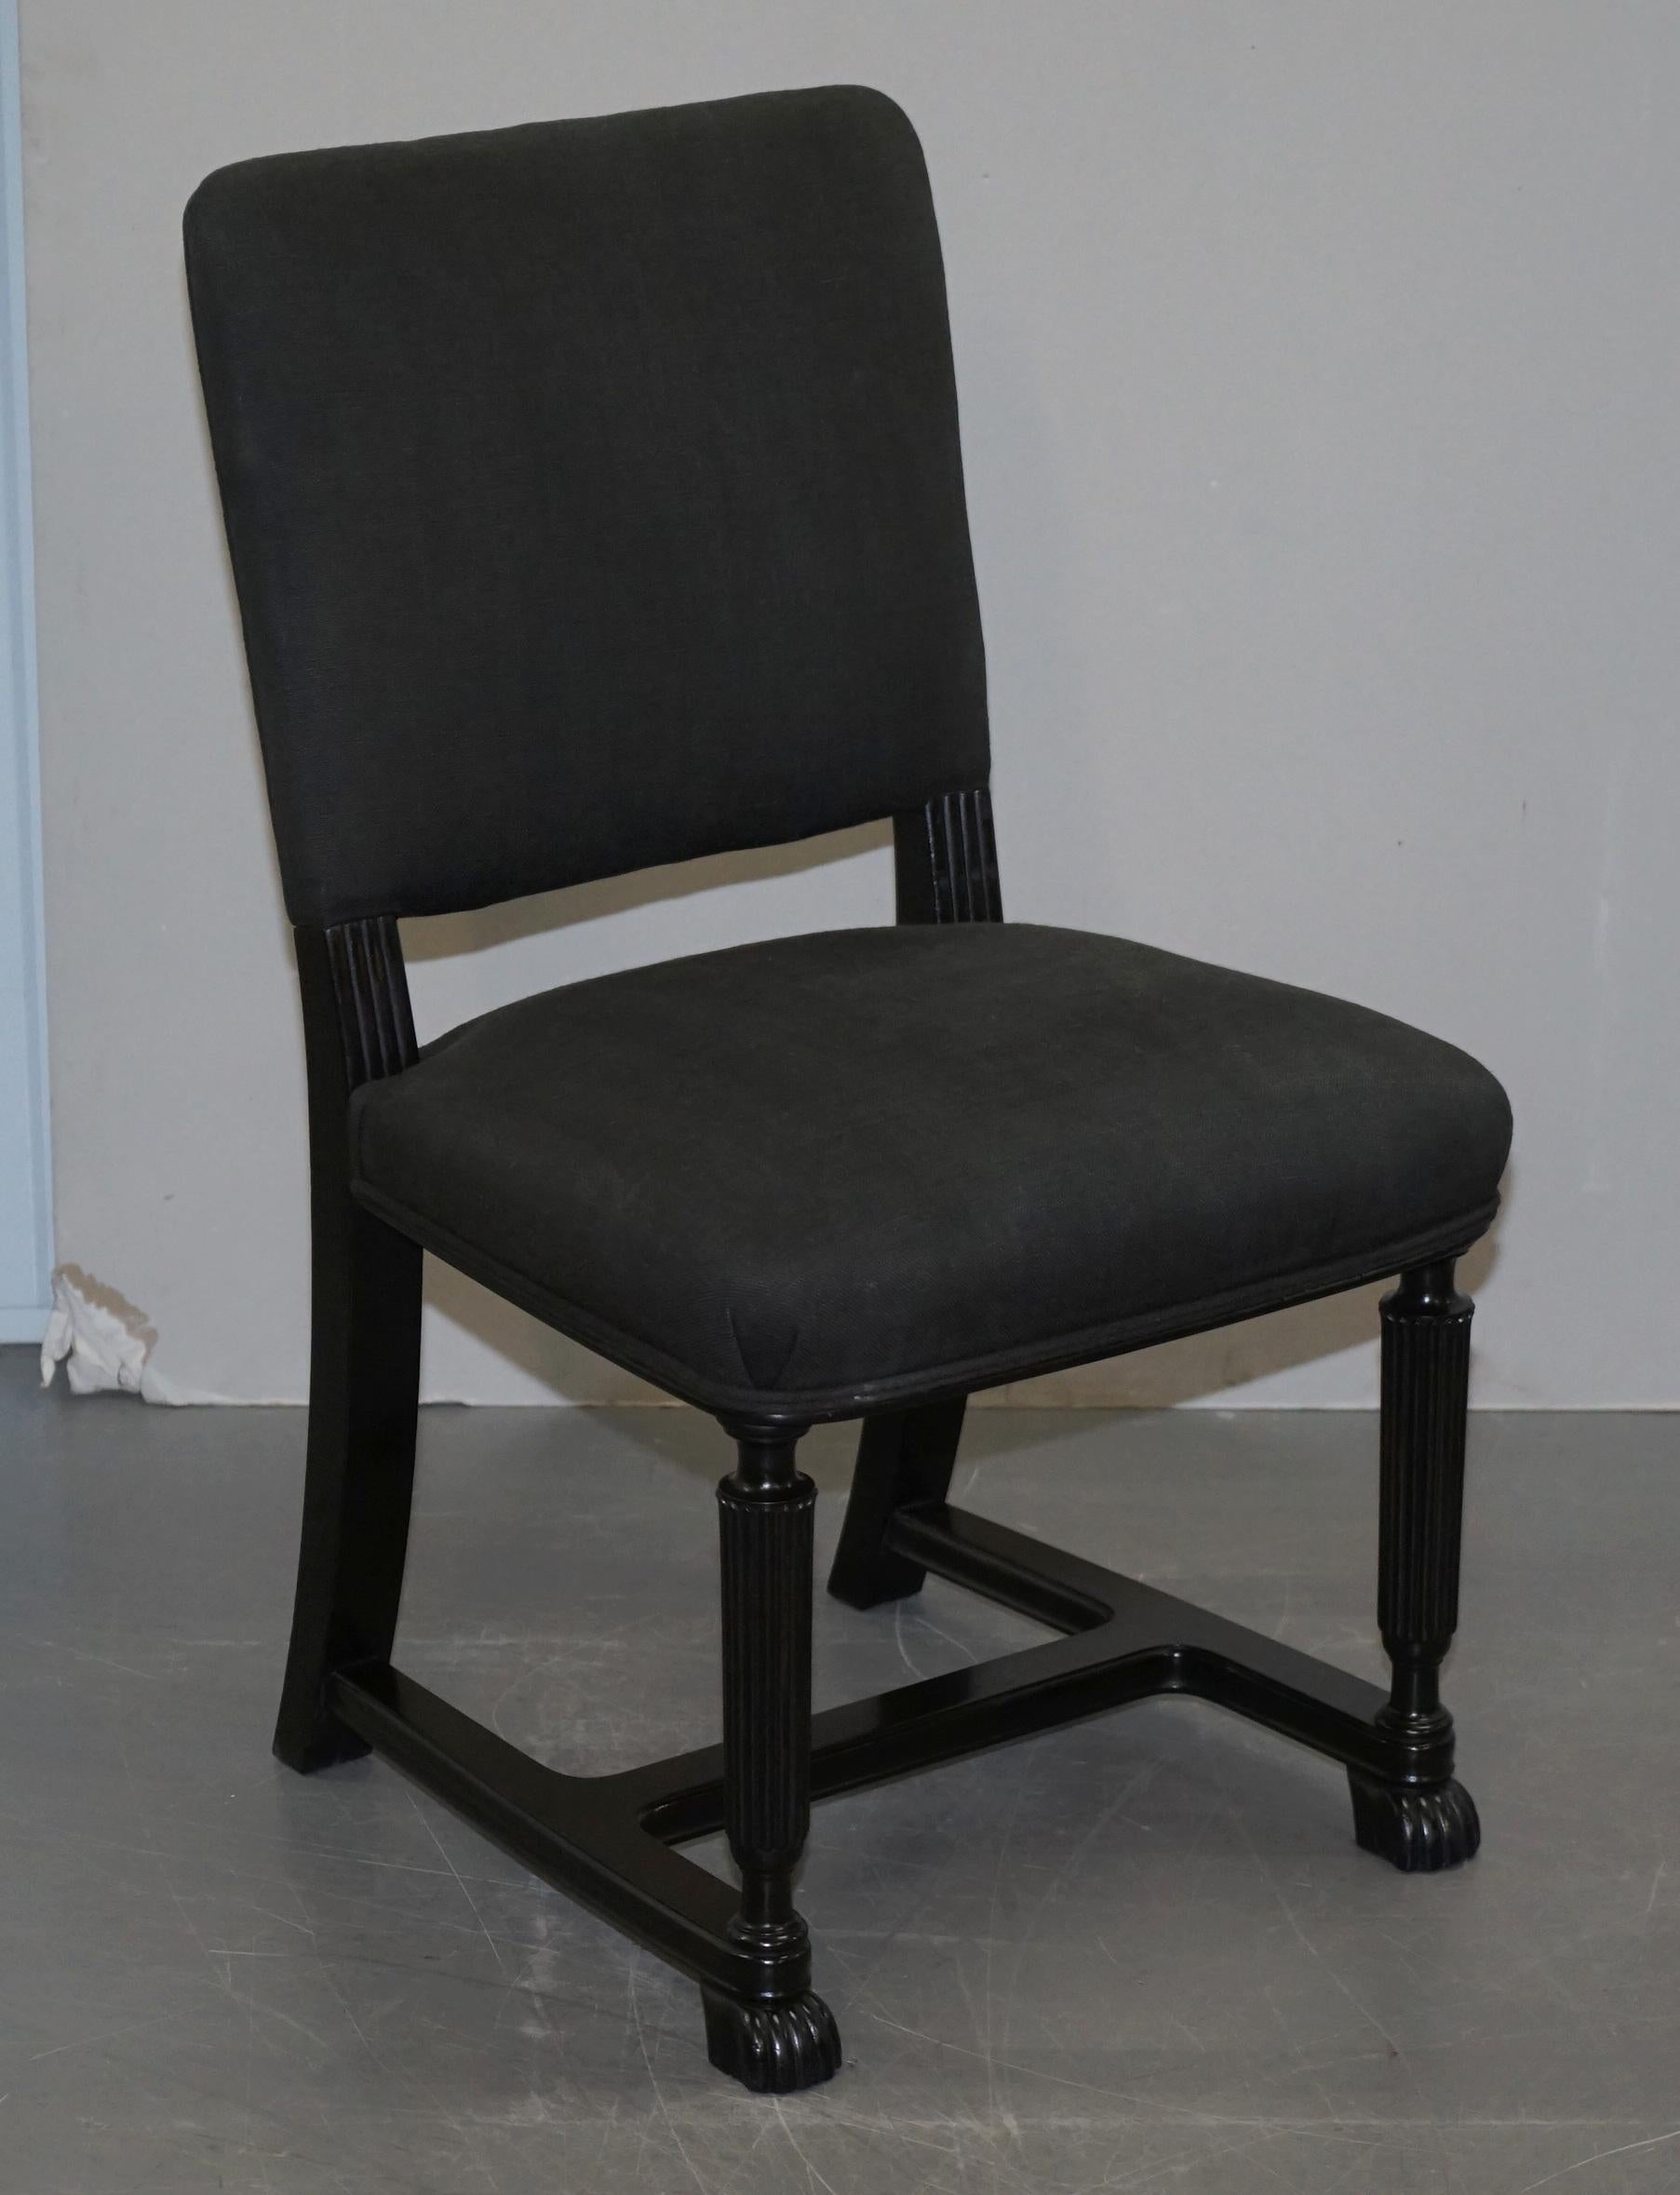 Wir freuen uns, dieses schöne Paar Eichholtz Beistellstühle mit ebonisiertem Gestell und grauer Leinenpolsterung zum Verkauf anbieten zu können

Diese sind ein sehr gut gemacht Paar Stühle, das Design basiert auf ca. 1810 Regency-Stil, die sehr